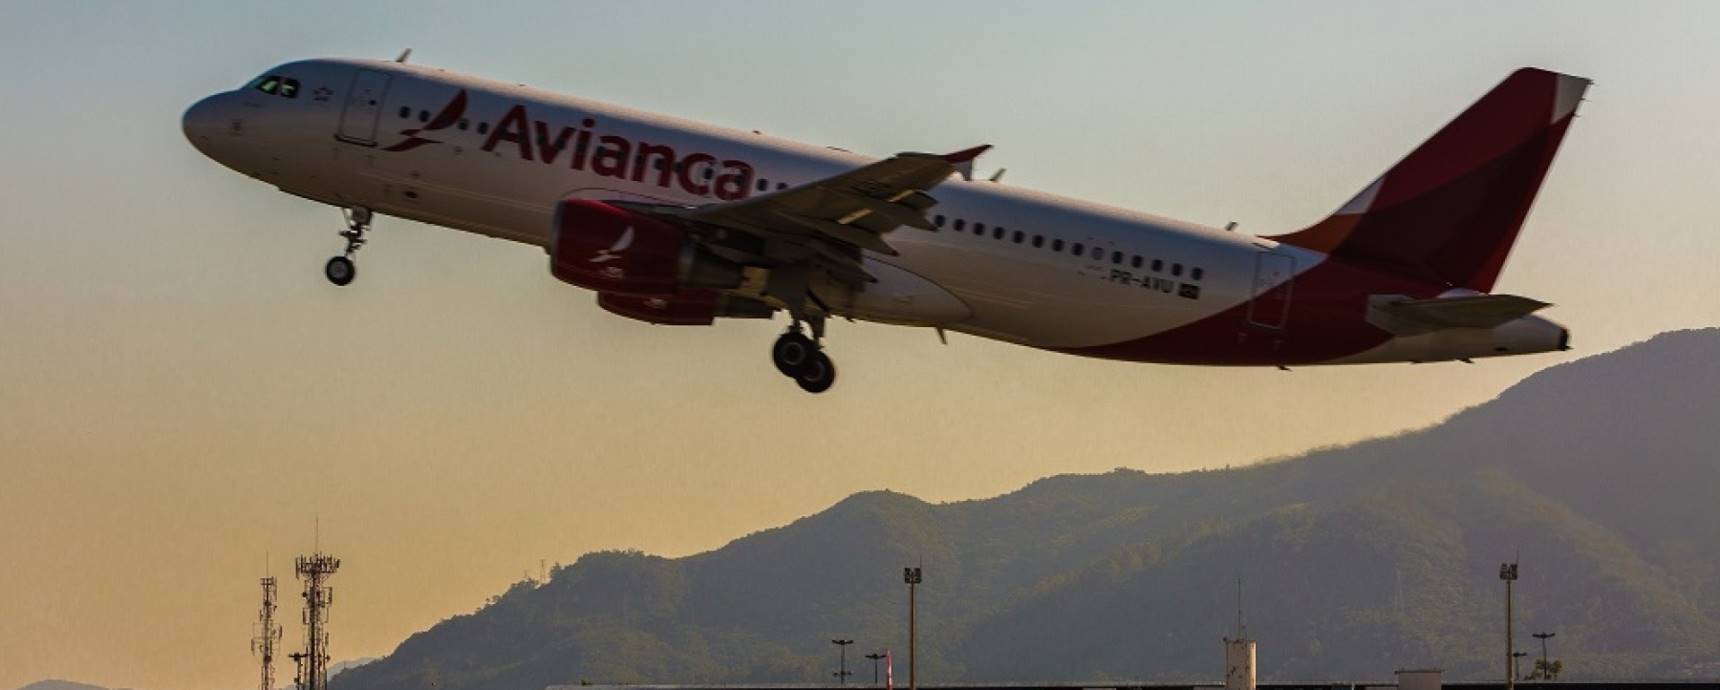 Floripa Der Flughafen kann ab Freitag die Dienste für Avianca Brasil unterbrechen